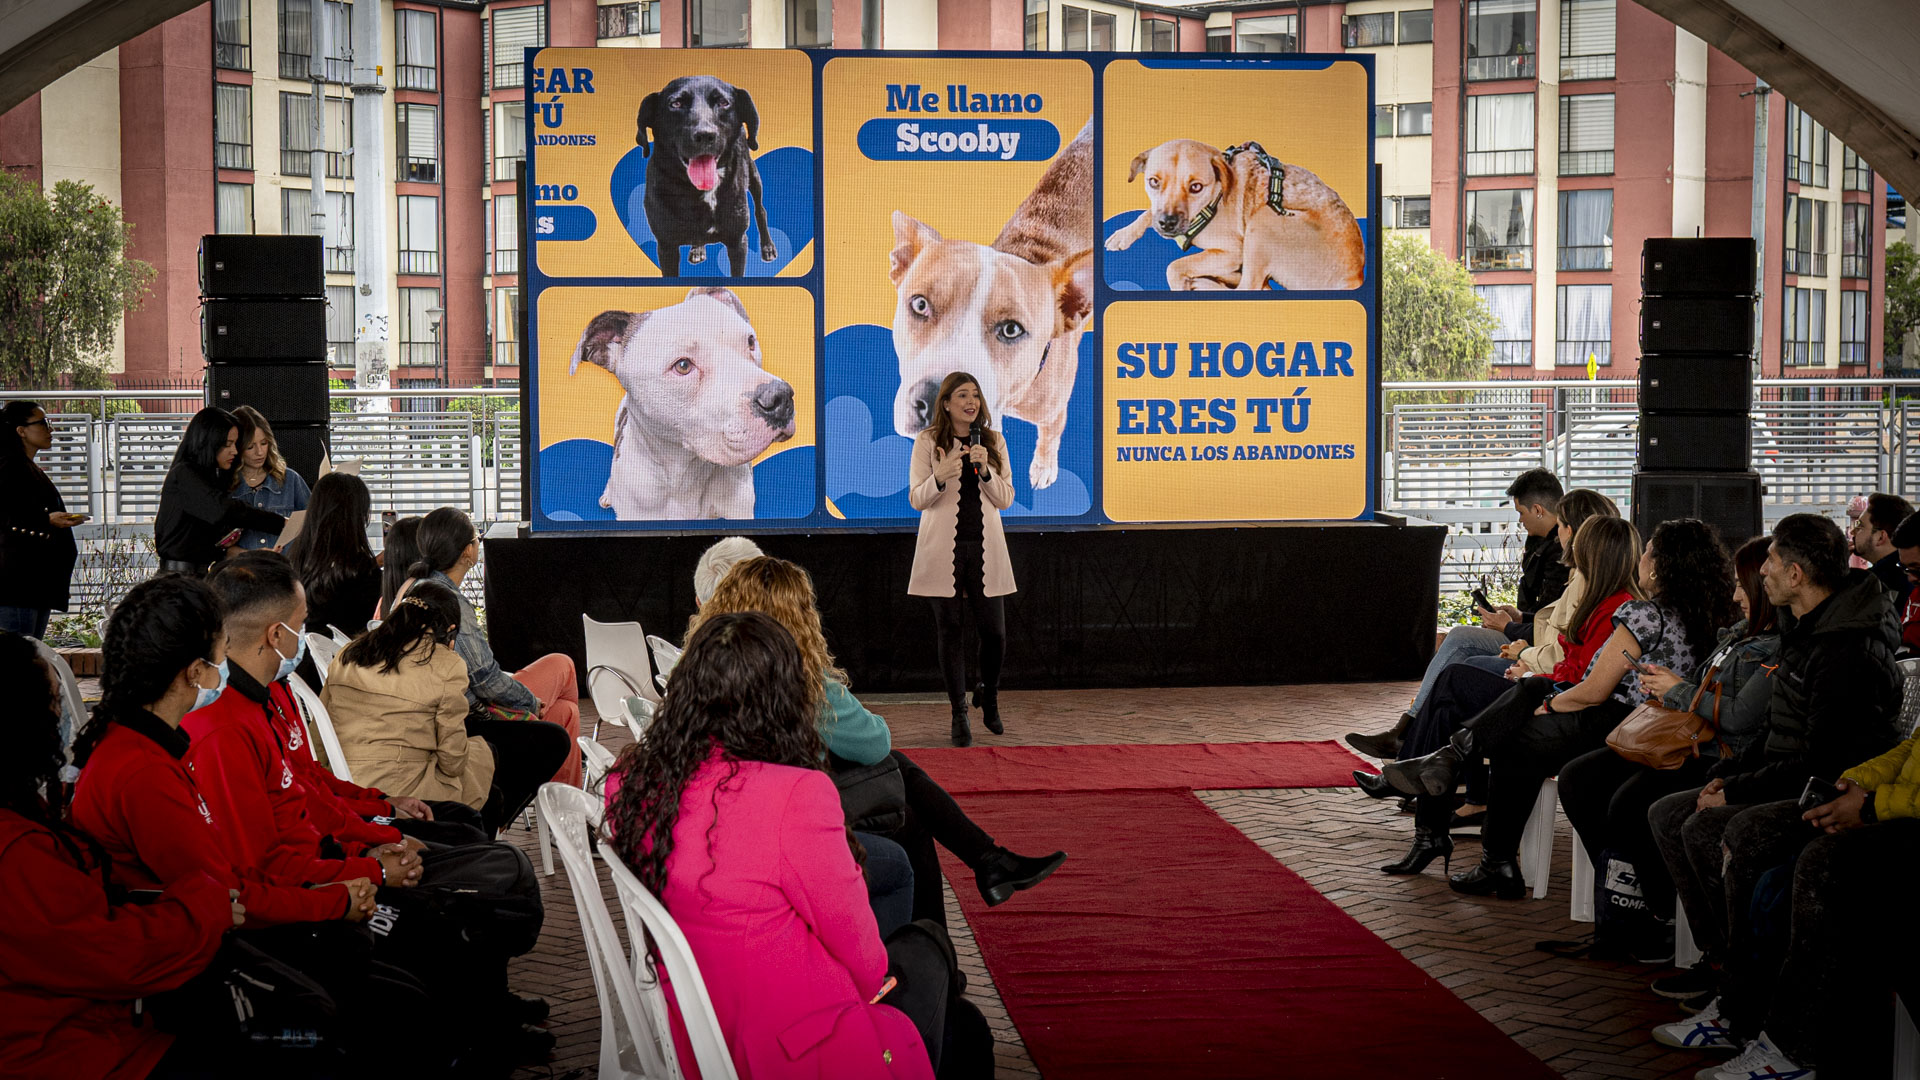 La campaña de Mars Petcare, TransMilenio y Pedigree para combatir el abandono animal e incentivar a las personas a que adopten mascotas.